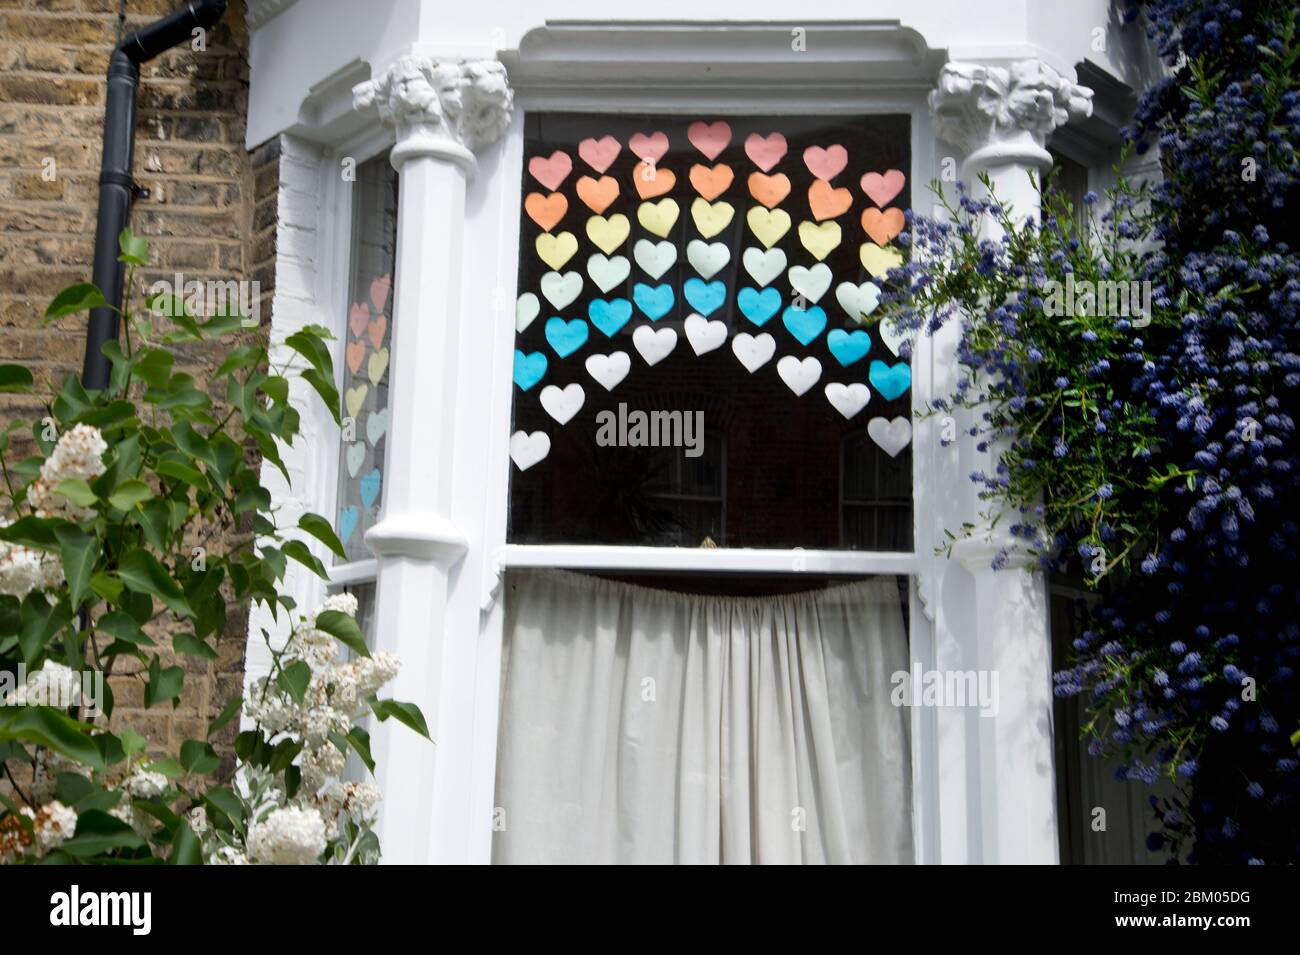 Londra aprile 2020 la pandemia di Covid-19. Hackney. Rainbow in finestra, disegnata da un bambino, a sostegno del personale di prima linea, compresi i lavoratori del NHS. Foto Stock